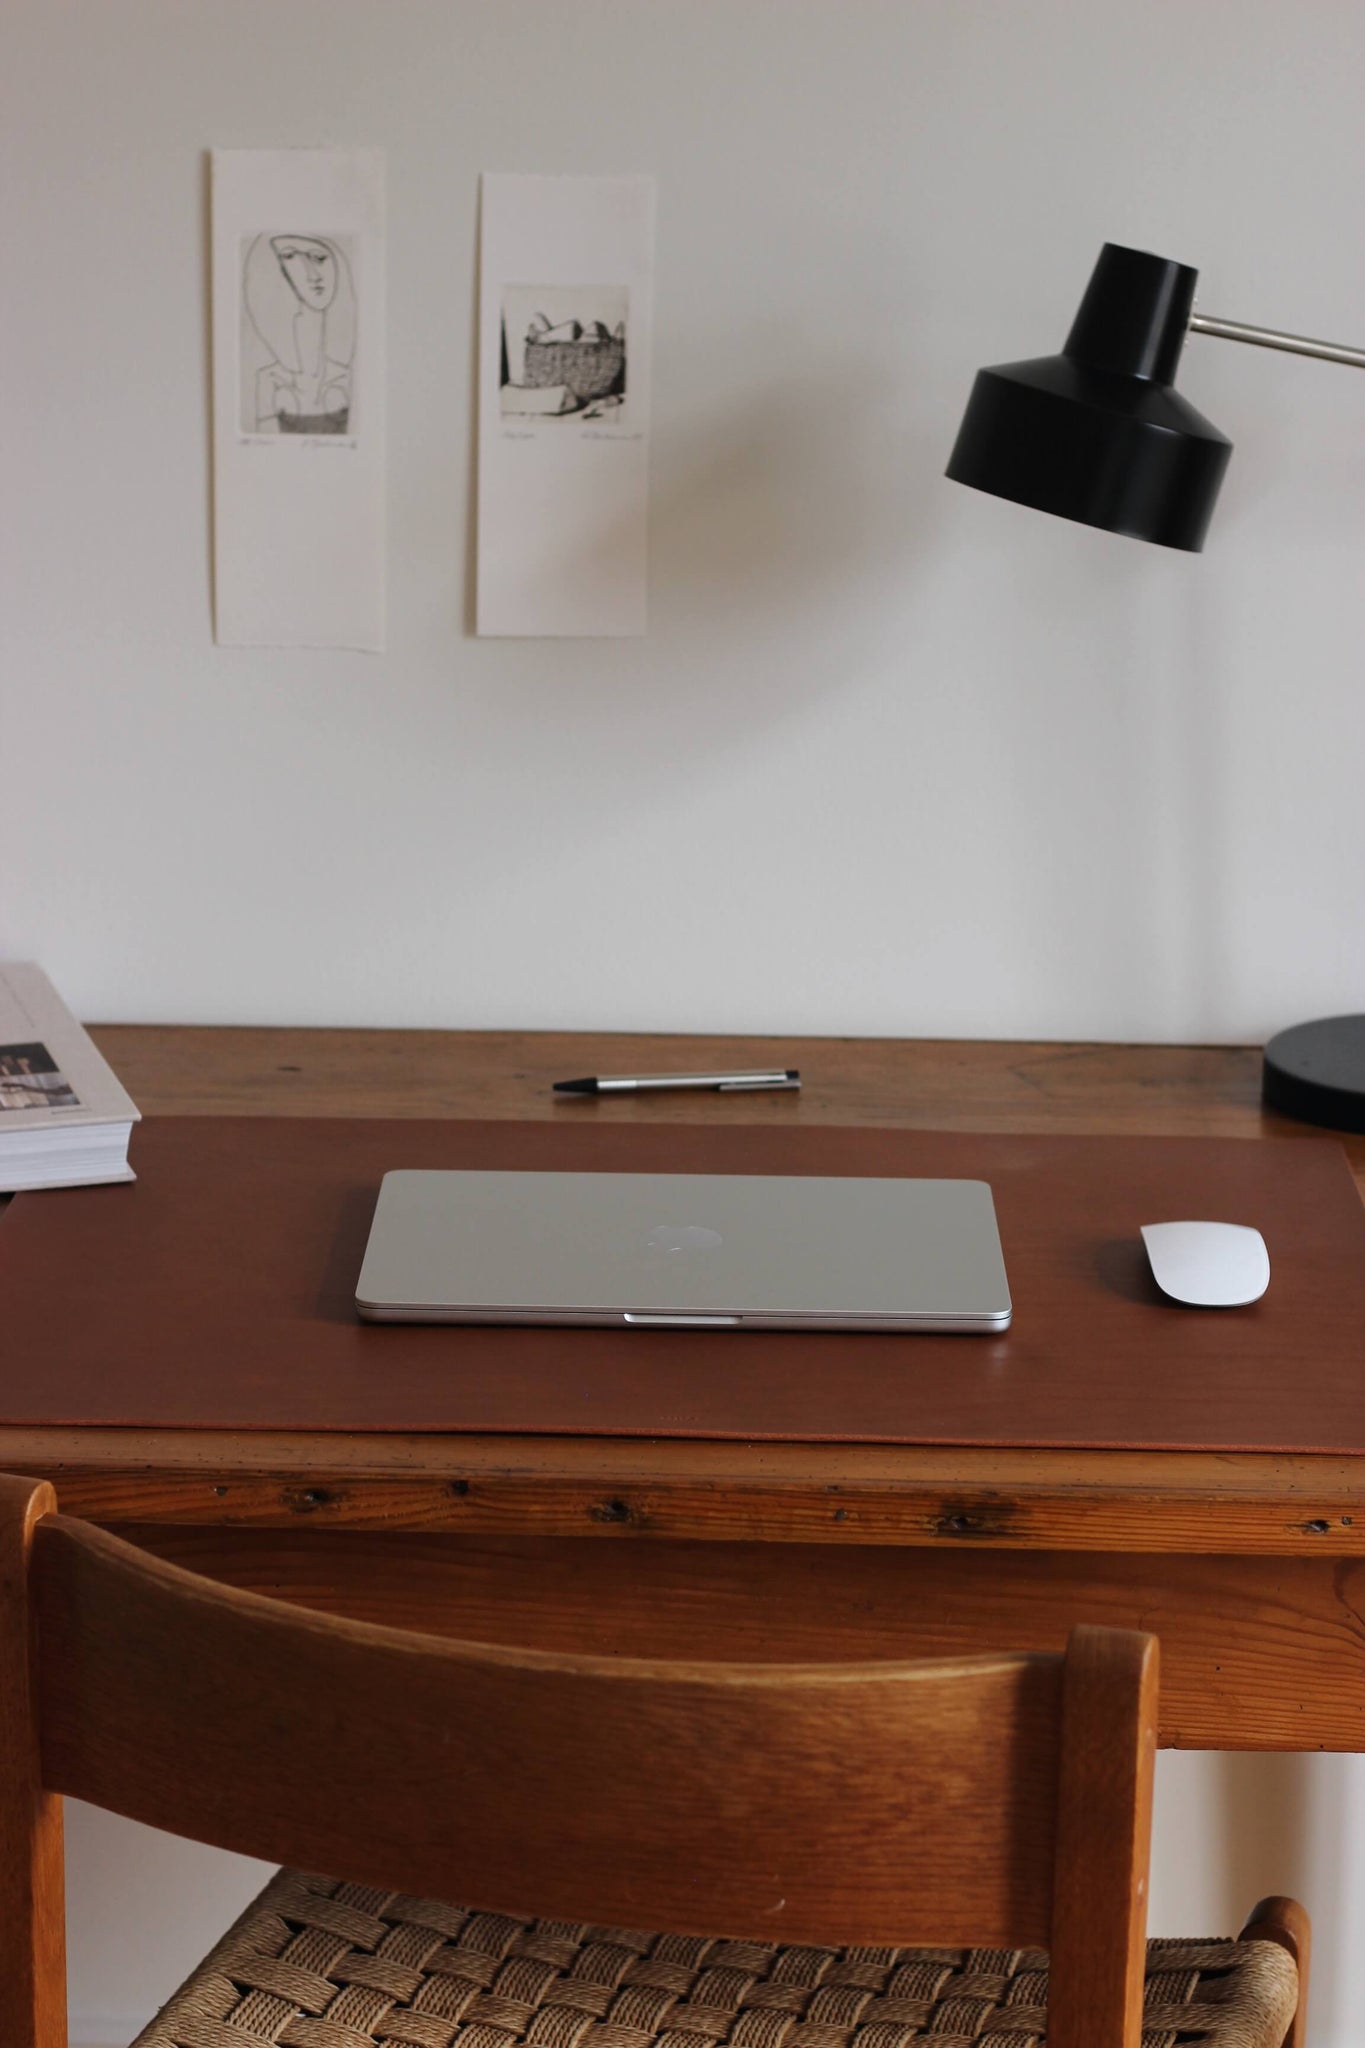 Eine Leder Schreibtischunterlage in Braun liegt auf einem Schreibtisch aus Holz und darauf befindet sich ein zugeklapptes MacBook und eine Maus.